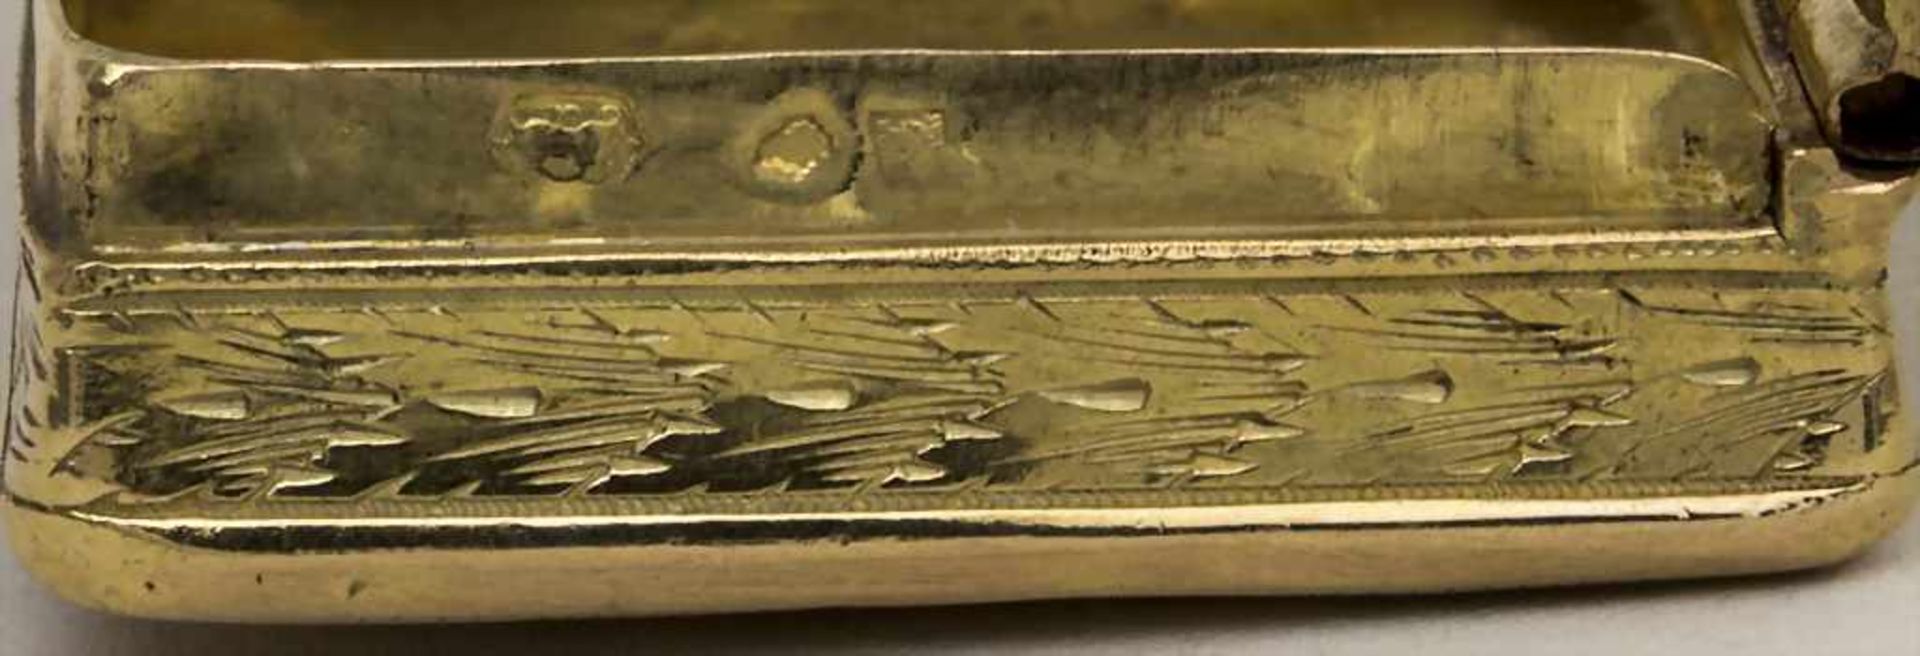 Tabatière / A snuff box, Paris, 1819-1839 Material: 18 Kt 750,Punzierung: Hahn Marke, Beschaumarke, - Bild 3 aus 3